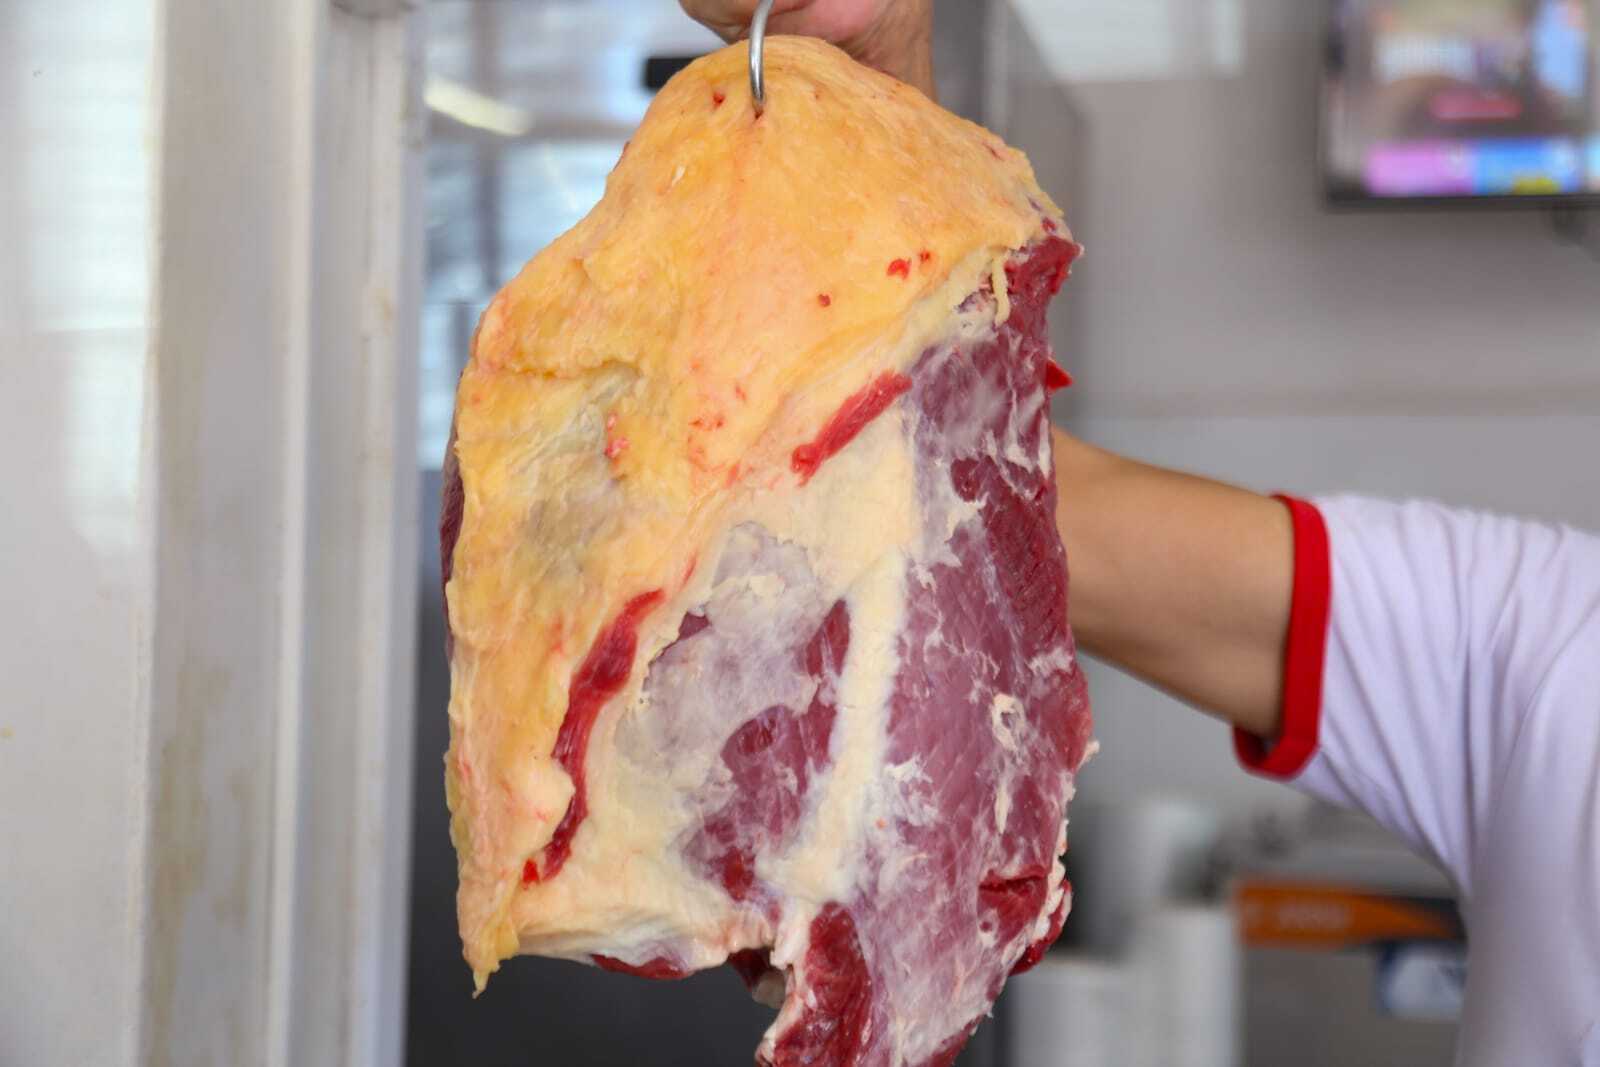 EUA: associação ensina como preparar cortes menos conhecidos de carne bovina